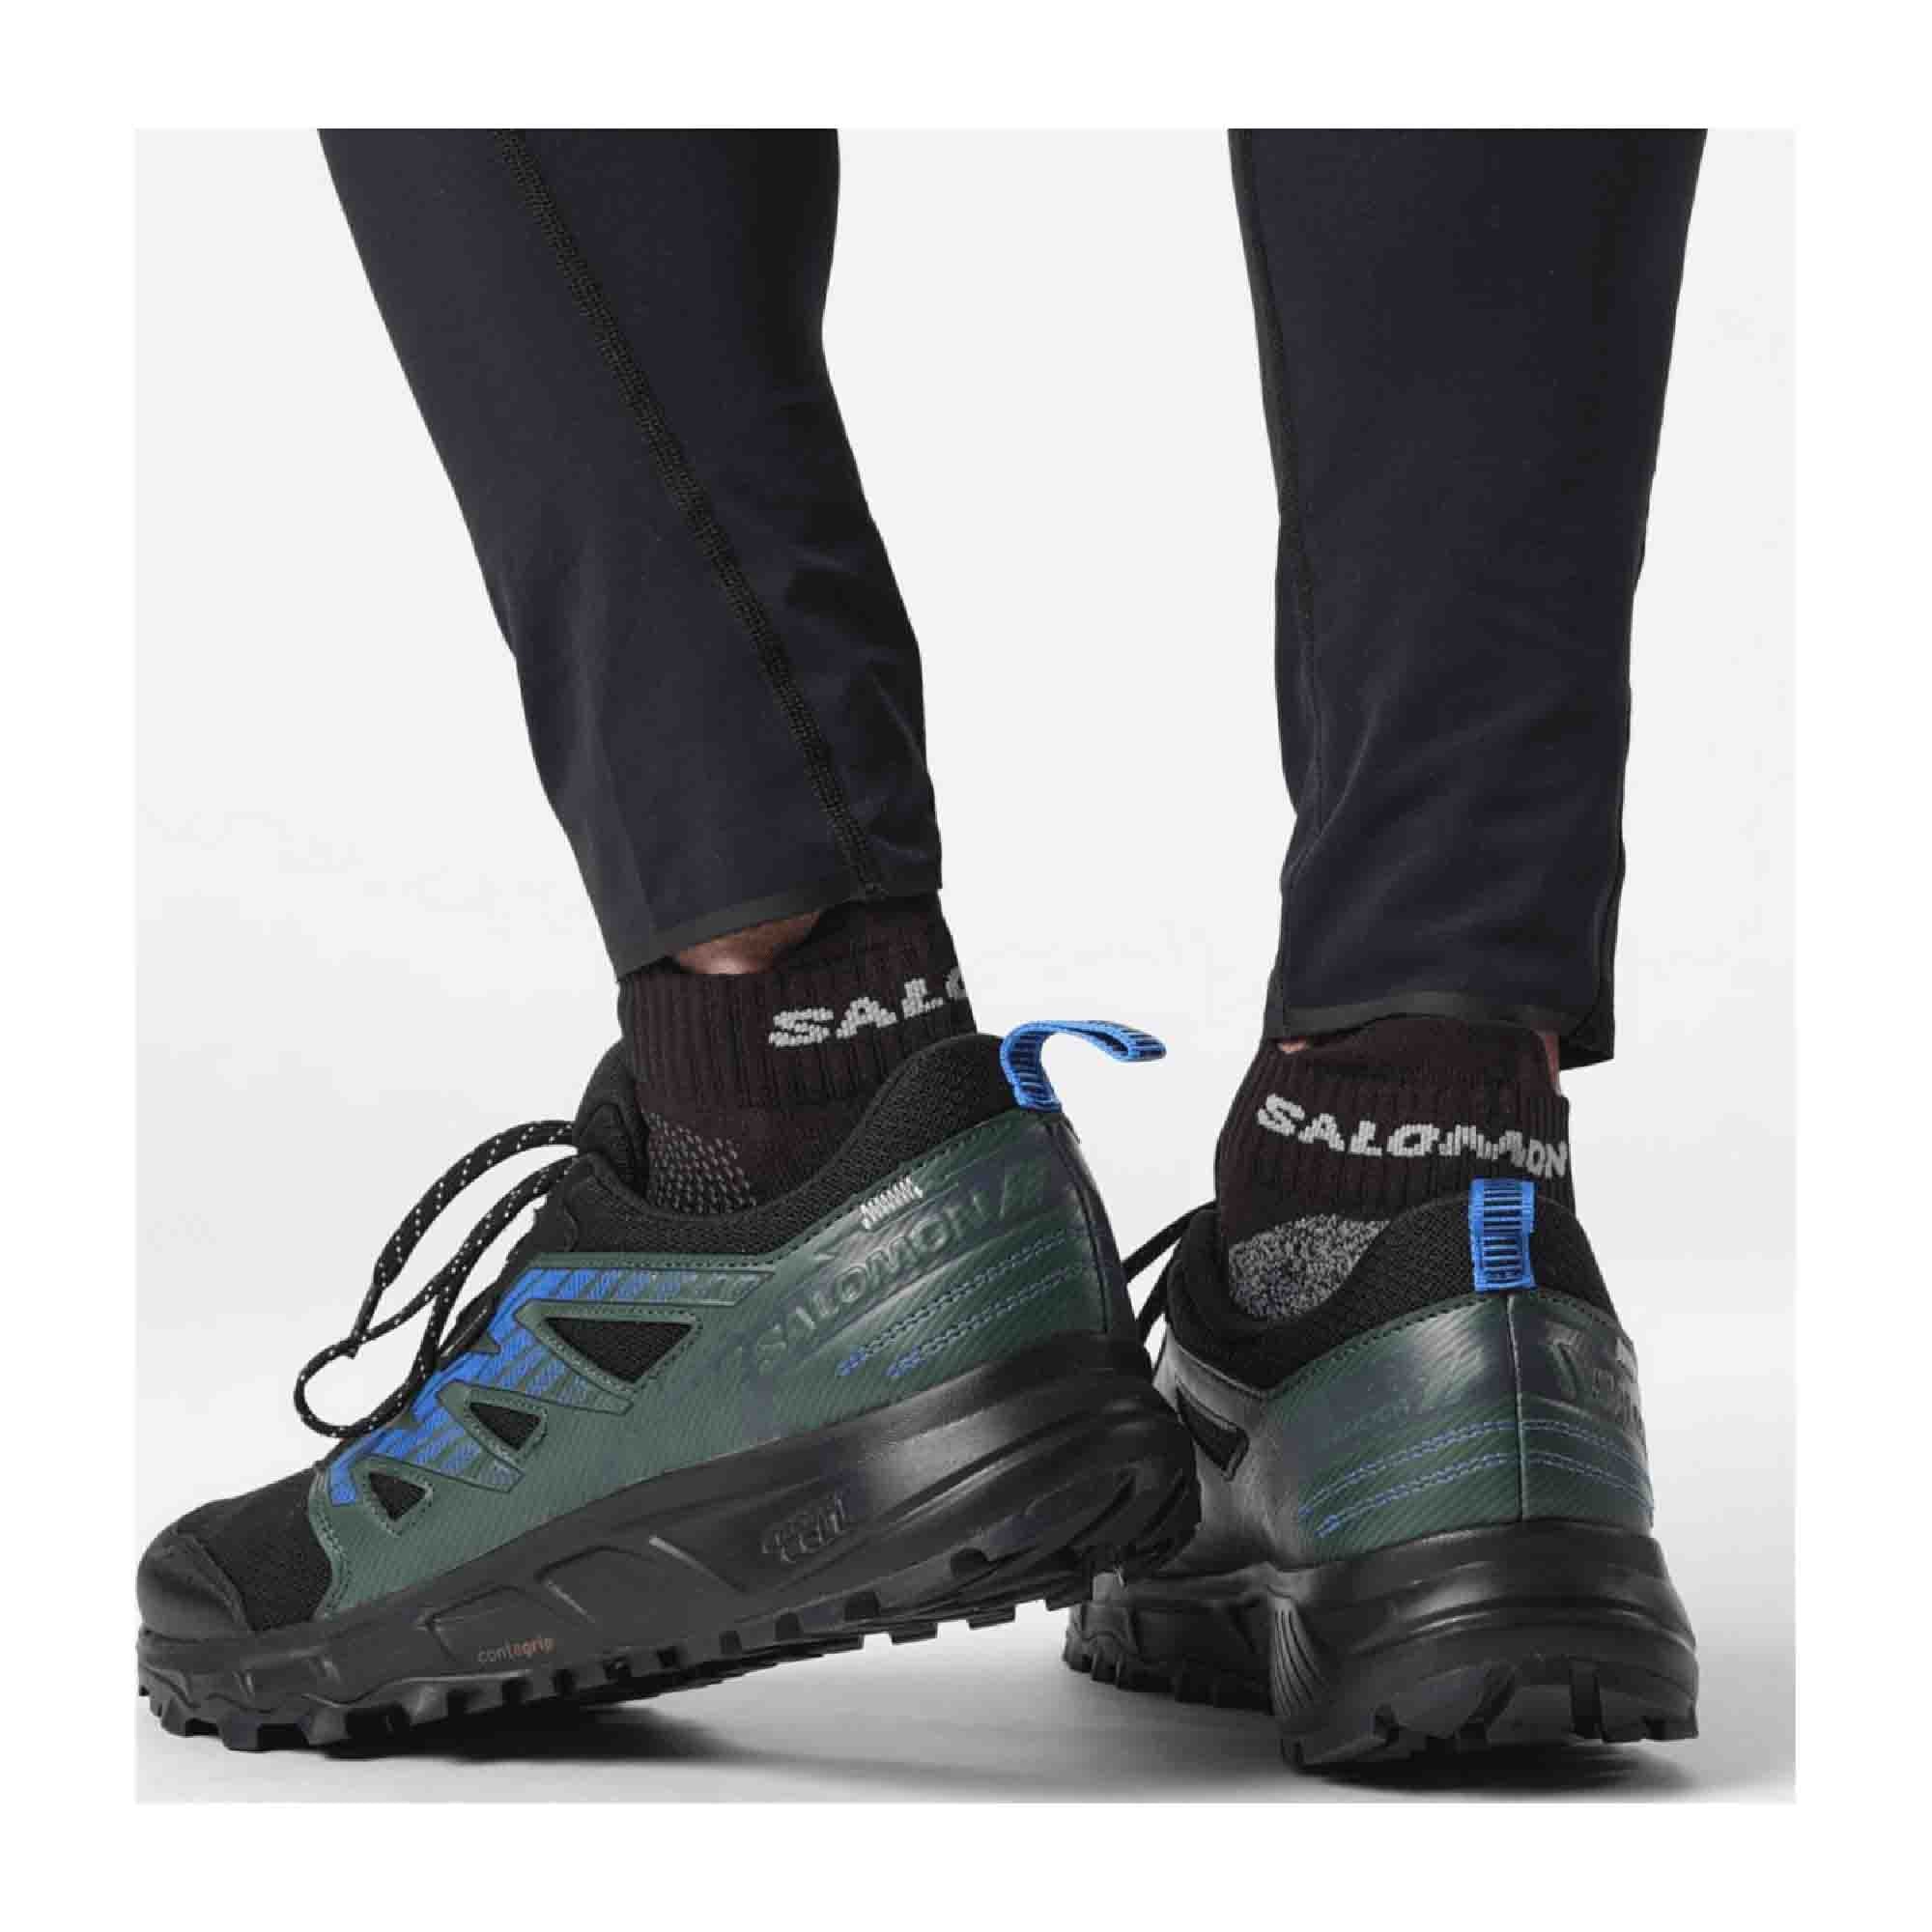 Salomon WANDER GTX for men, black, shoes